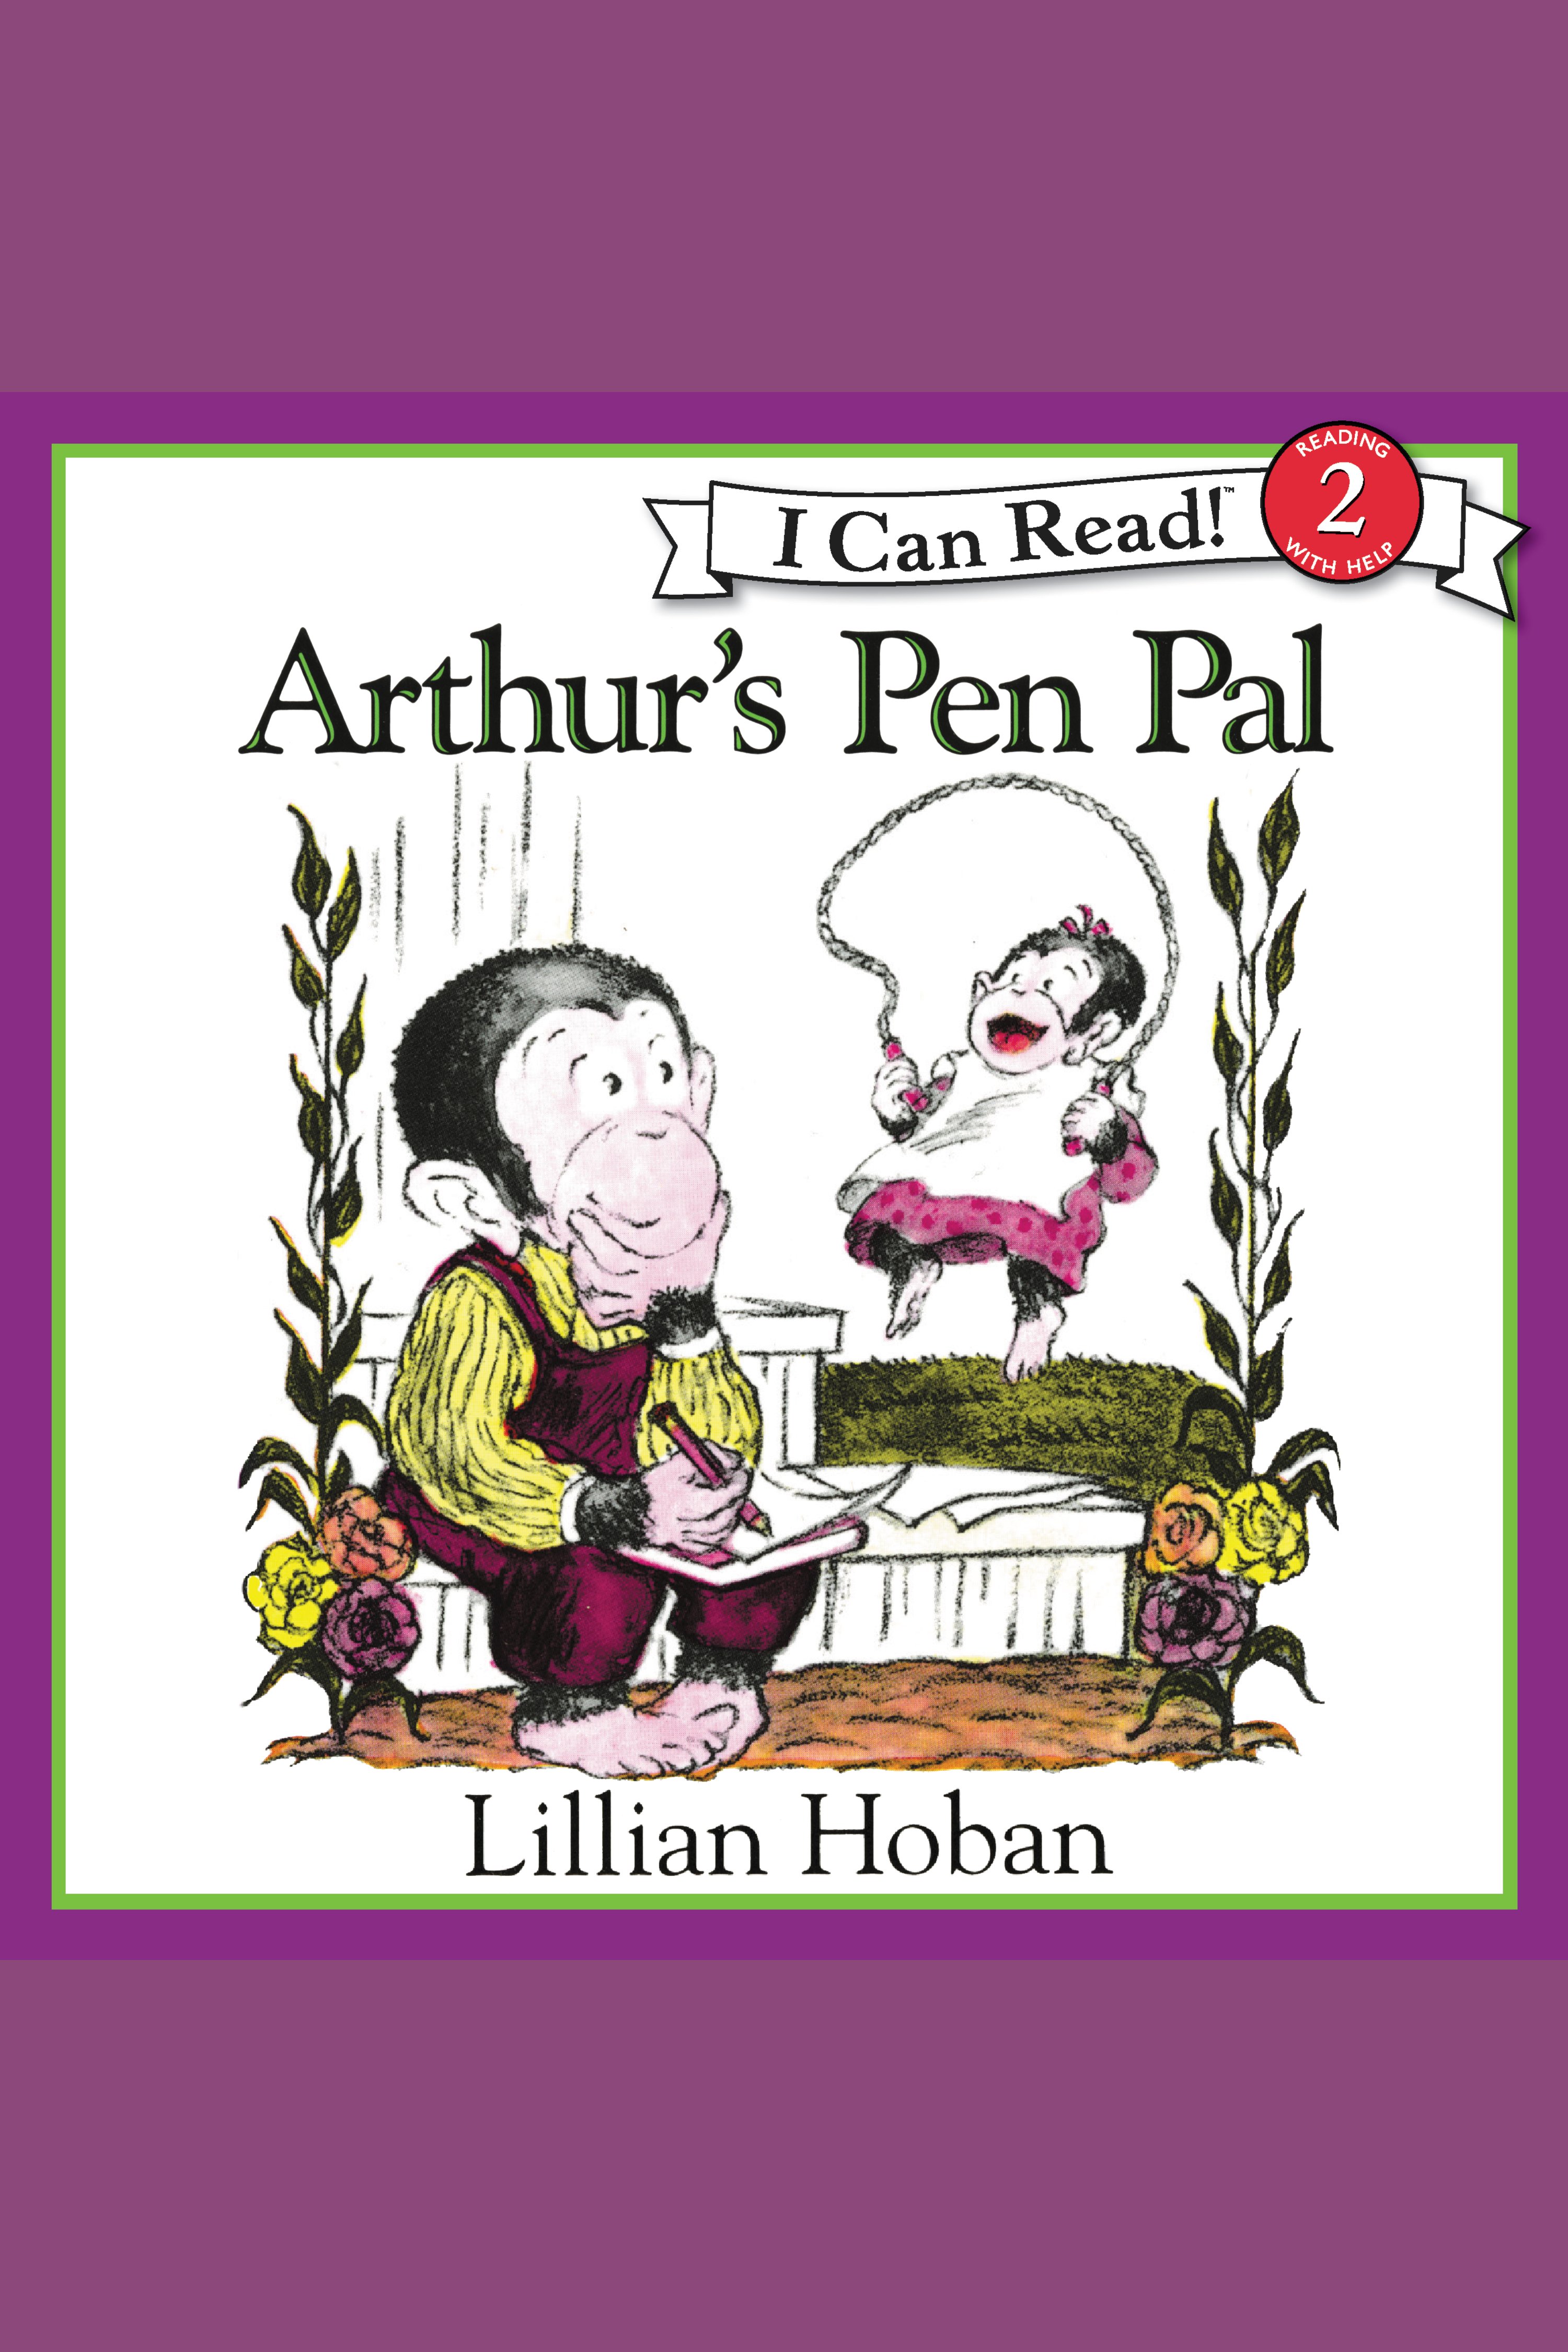 Arthur's pen pal cover image